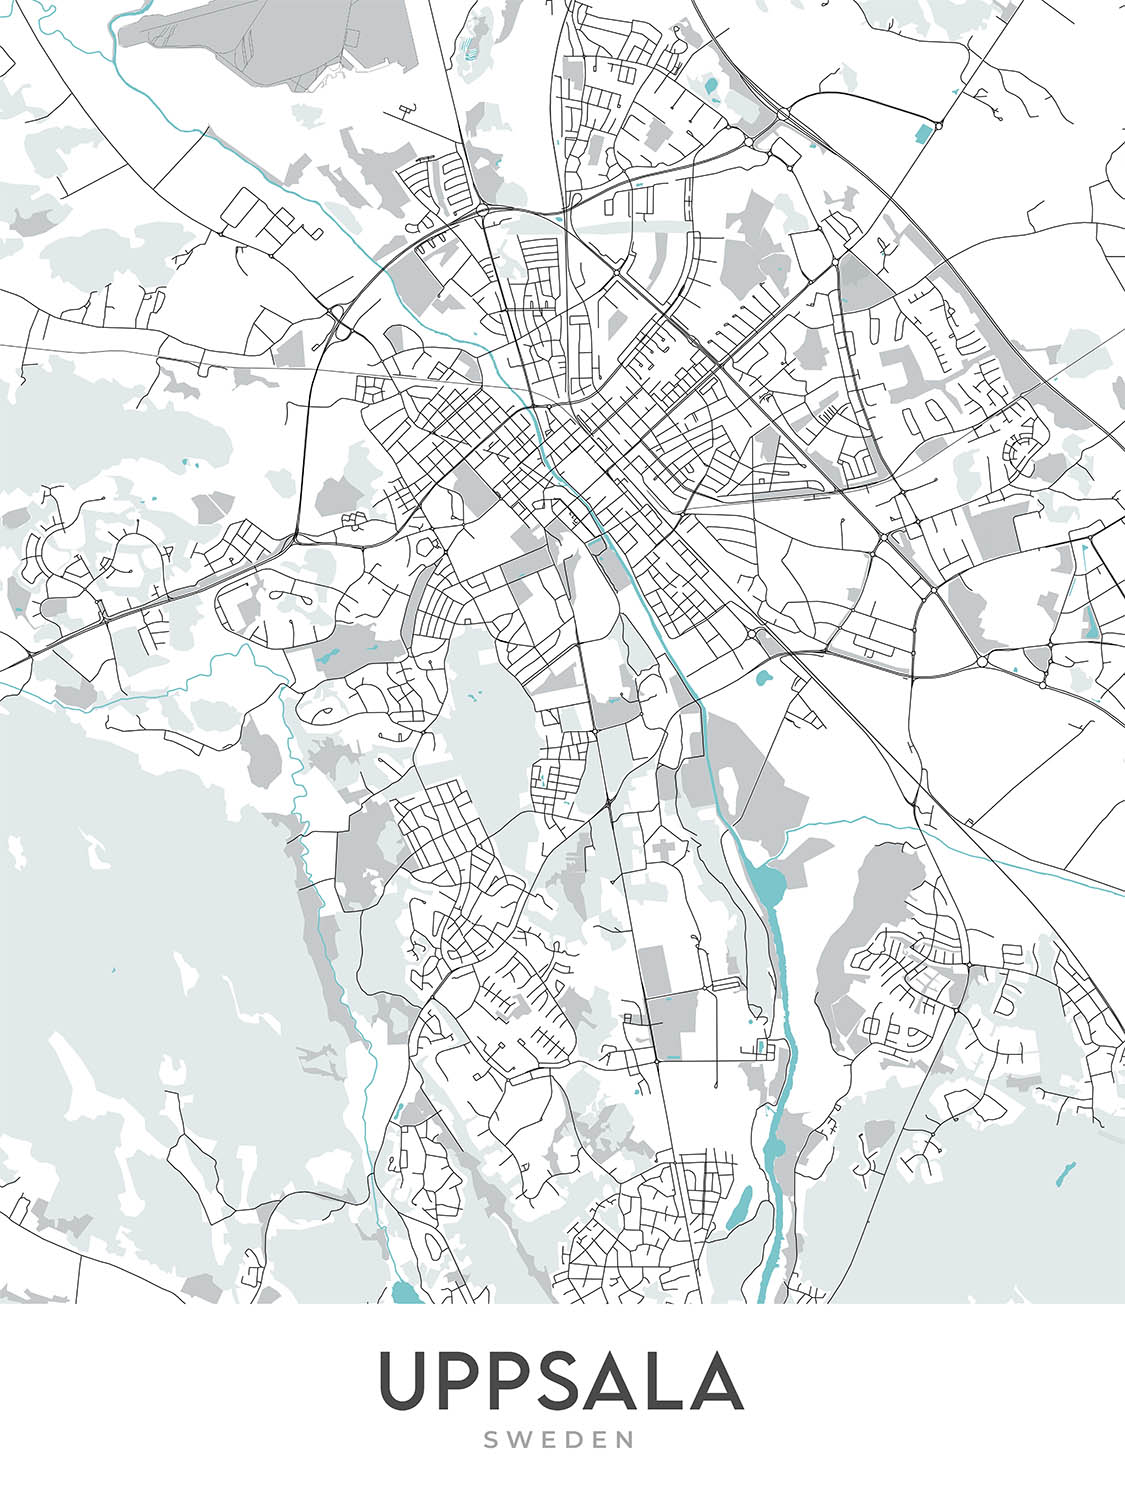 Plan de la ville moderne d'Uppsala, Suède : château, cathédrale, université, parcs, rivière